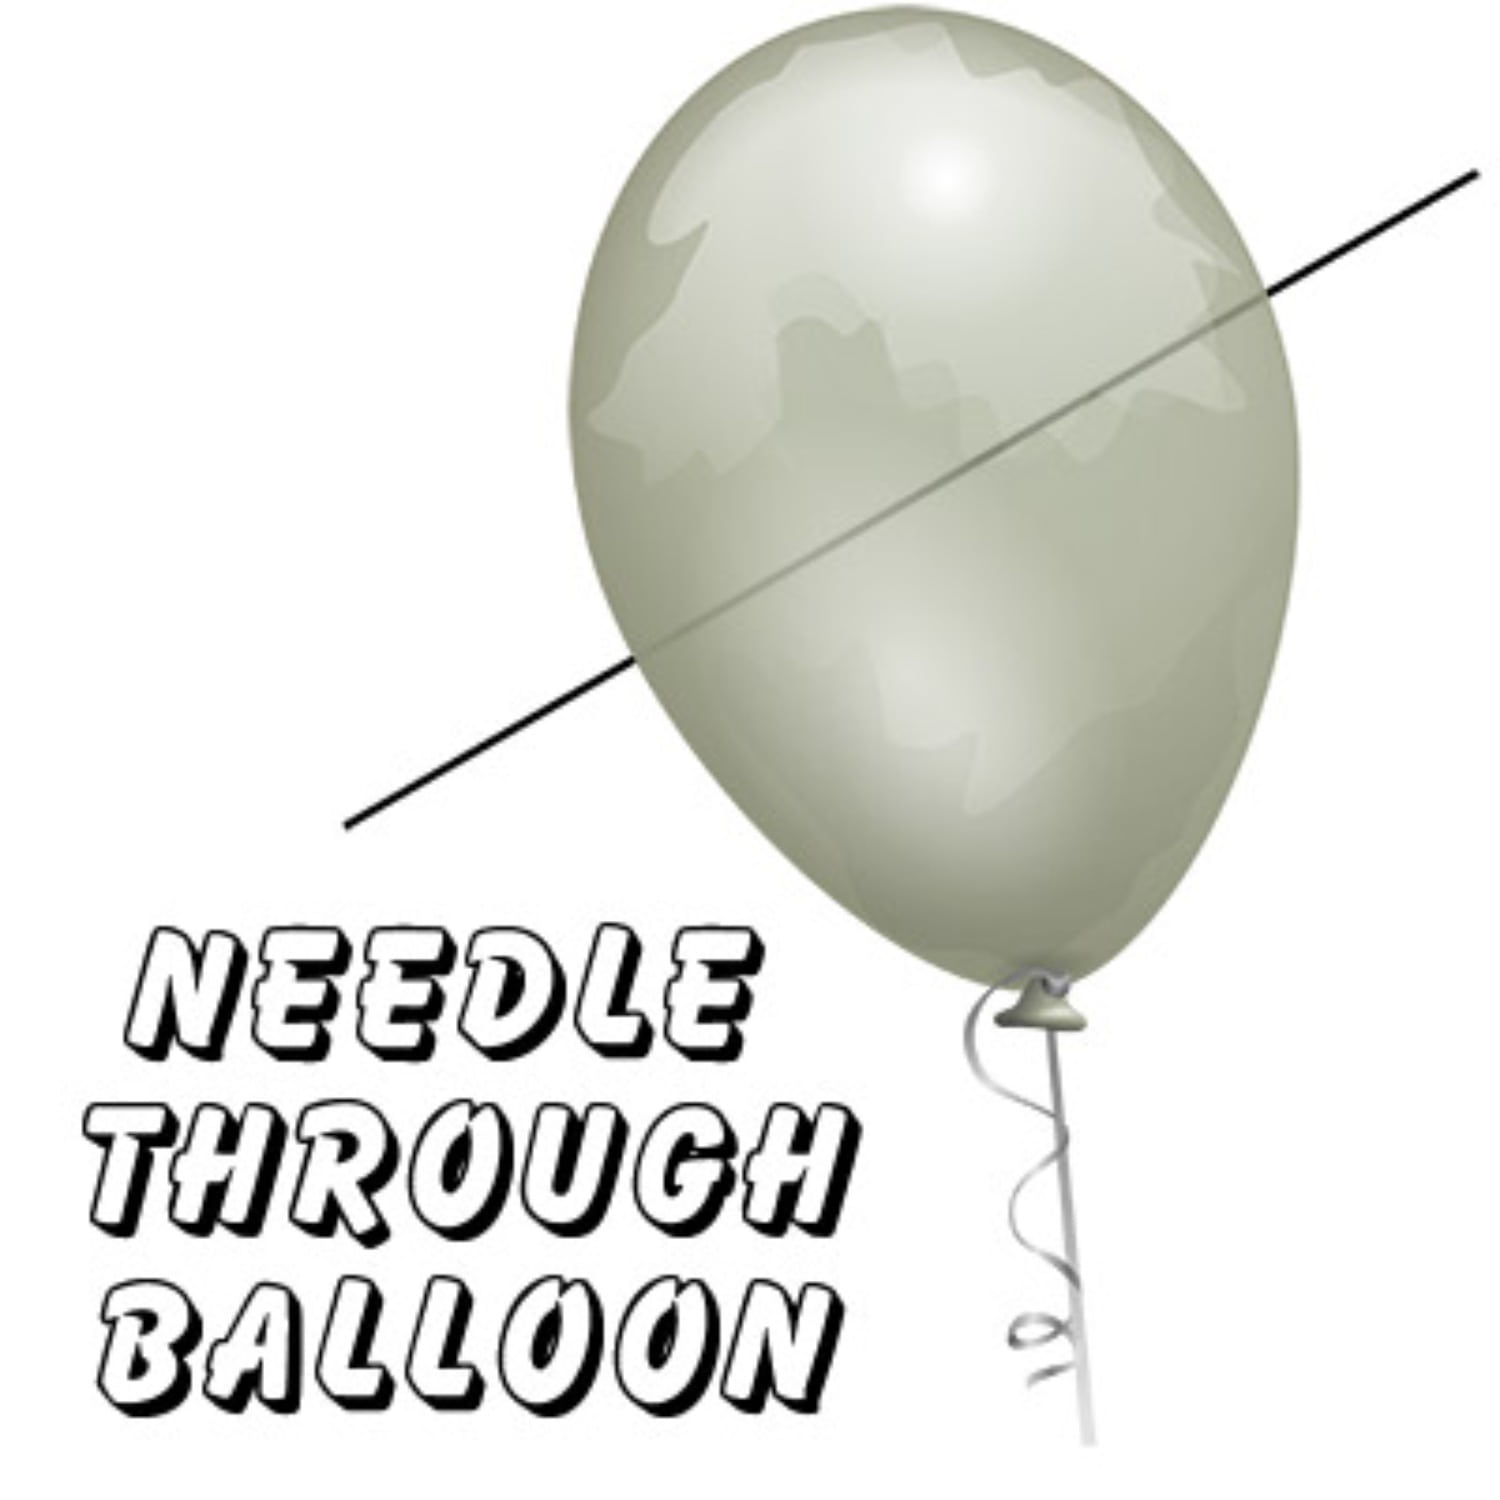 [니들쓰루벌룬]Needle Thru Balloon 실제 바늘로 풍선을 터뜨리지 않고 통과하는 마술입니다  (partyn)